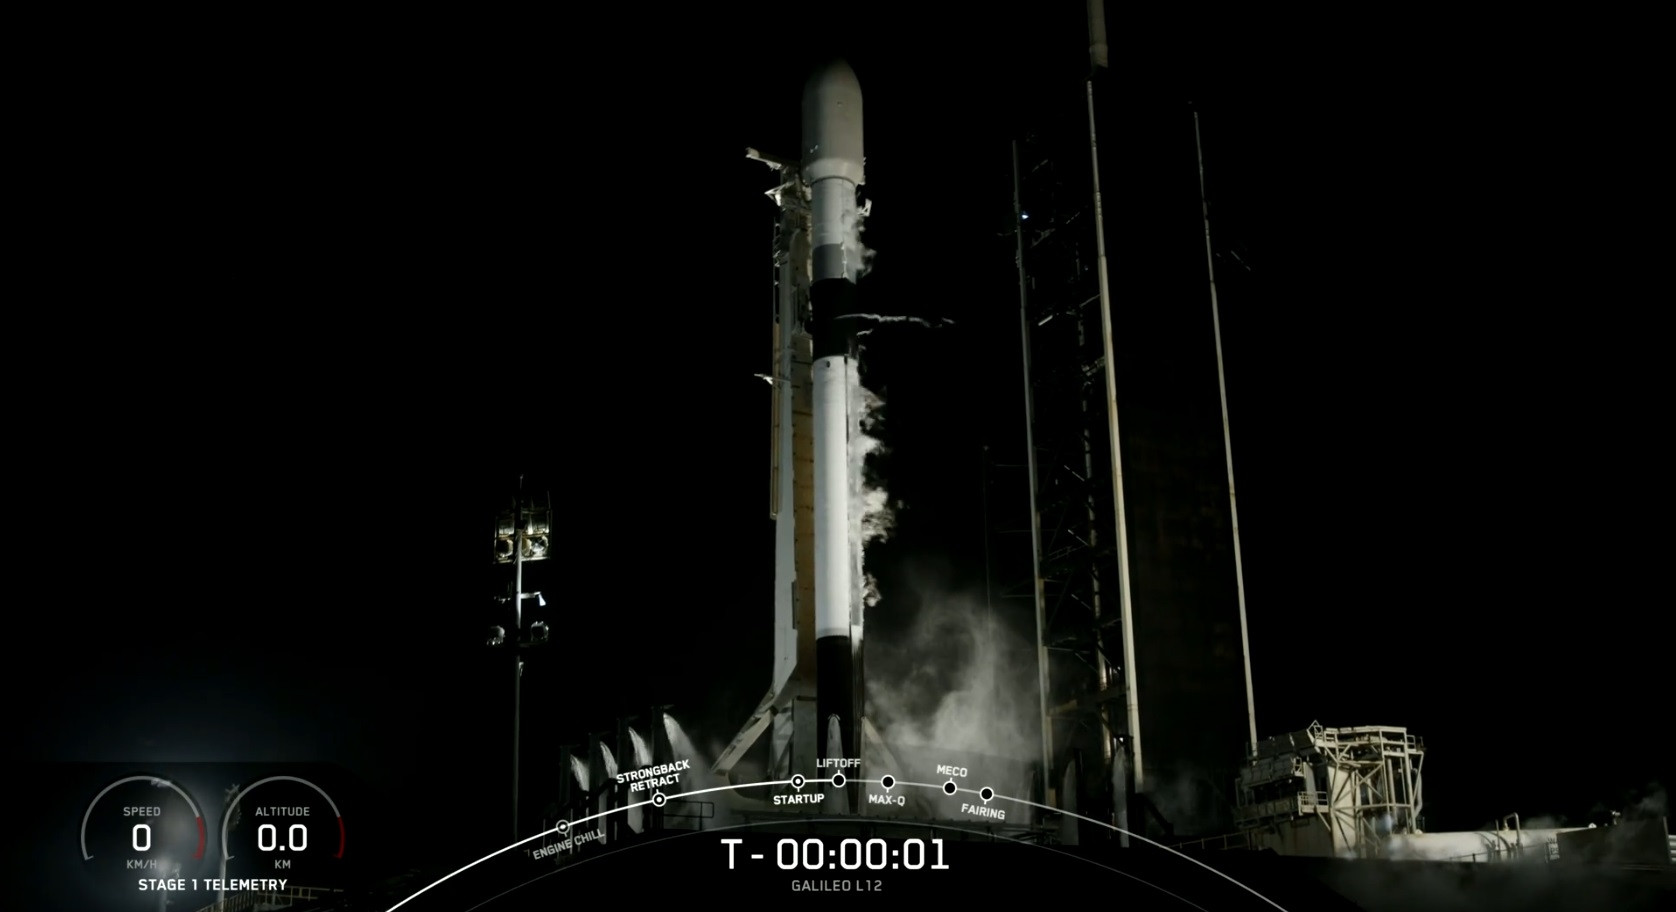 SpaceX mission Galileo L12